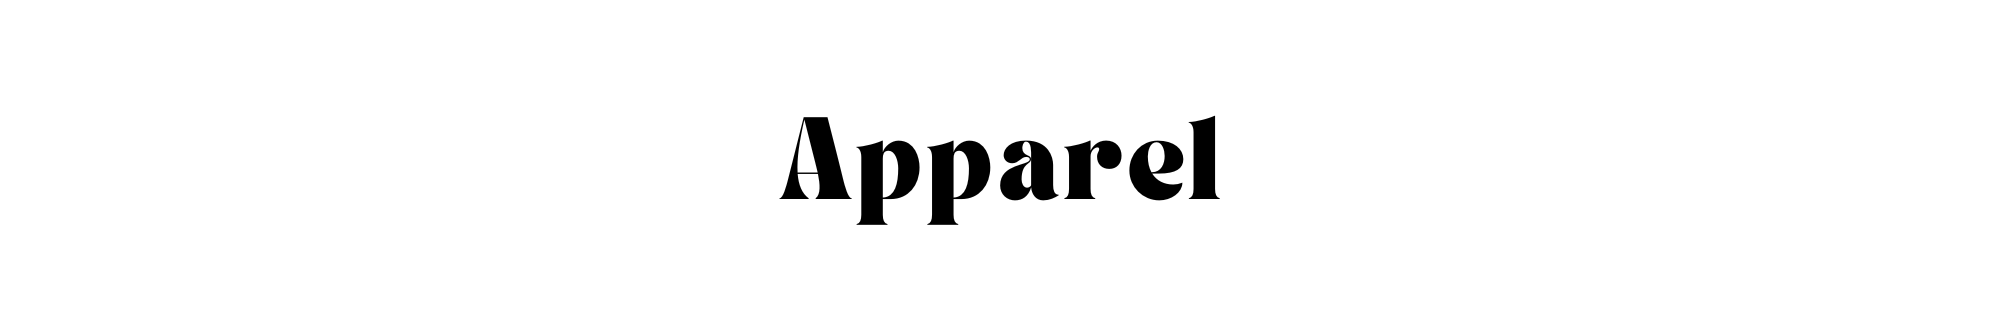 Apparel | MCA Denver Shop